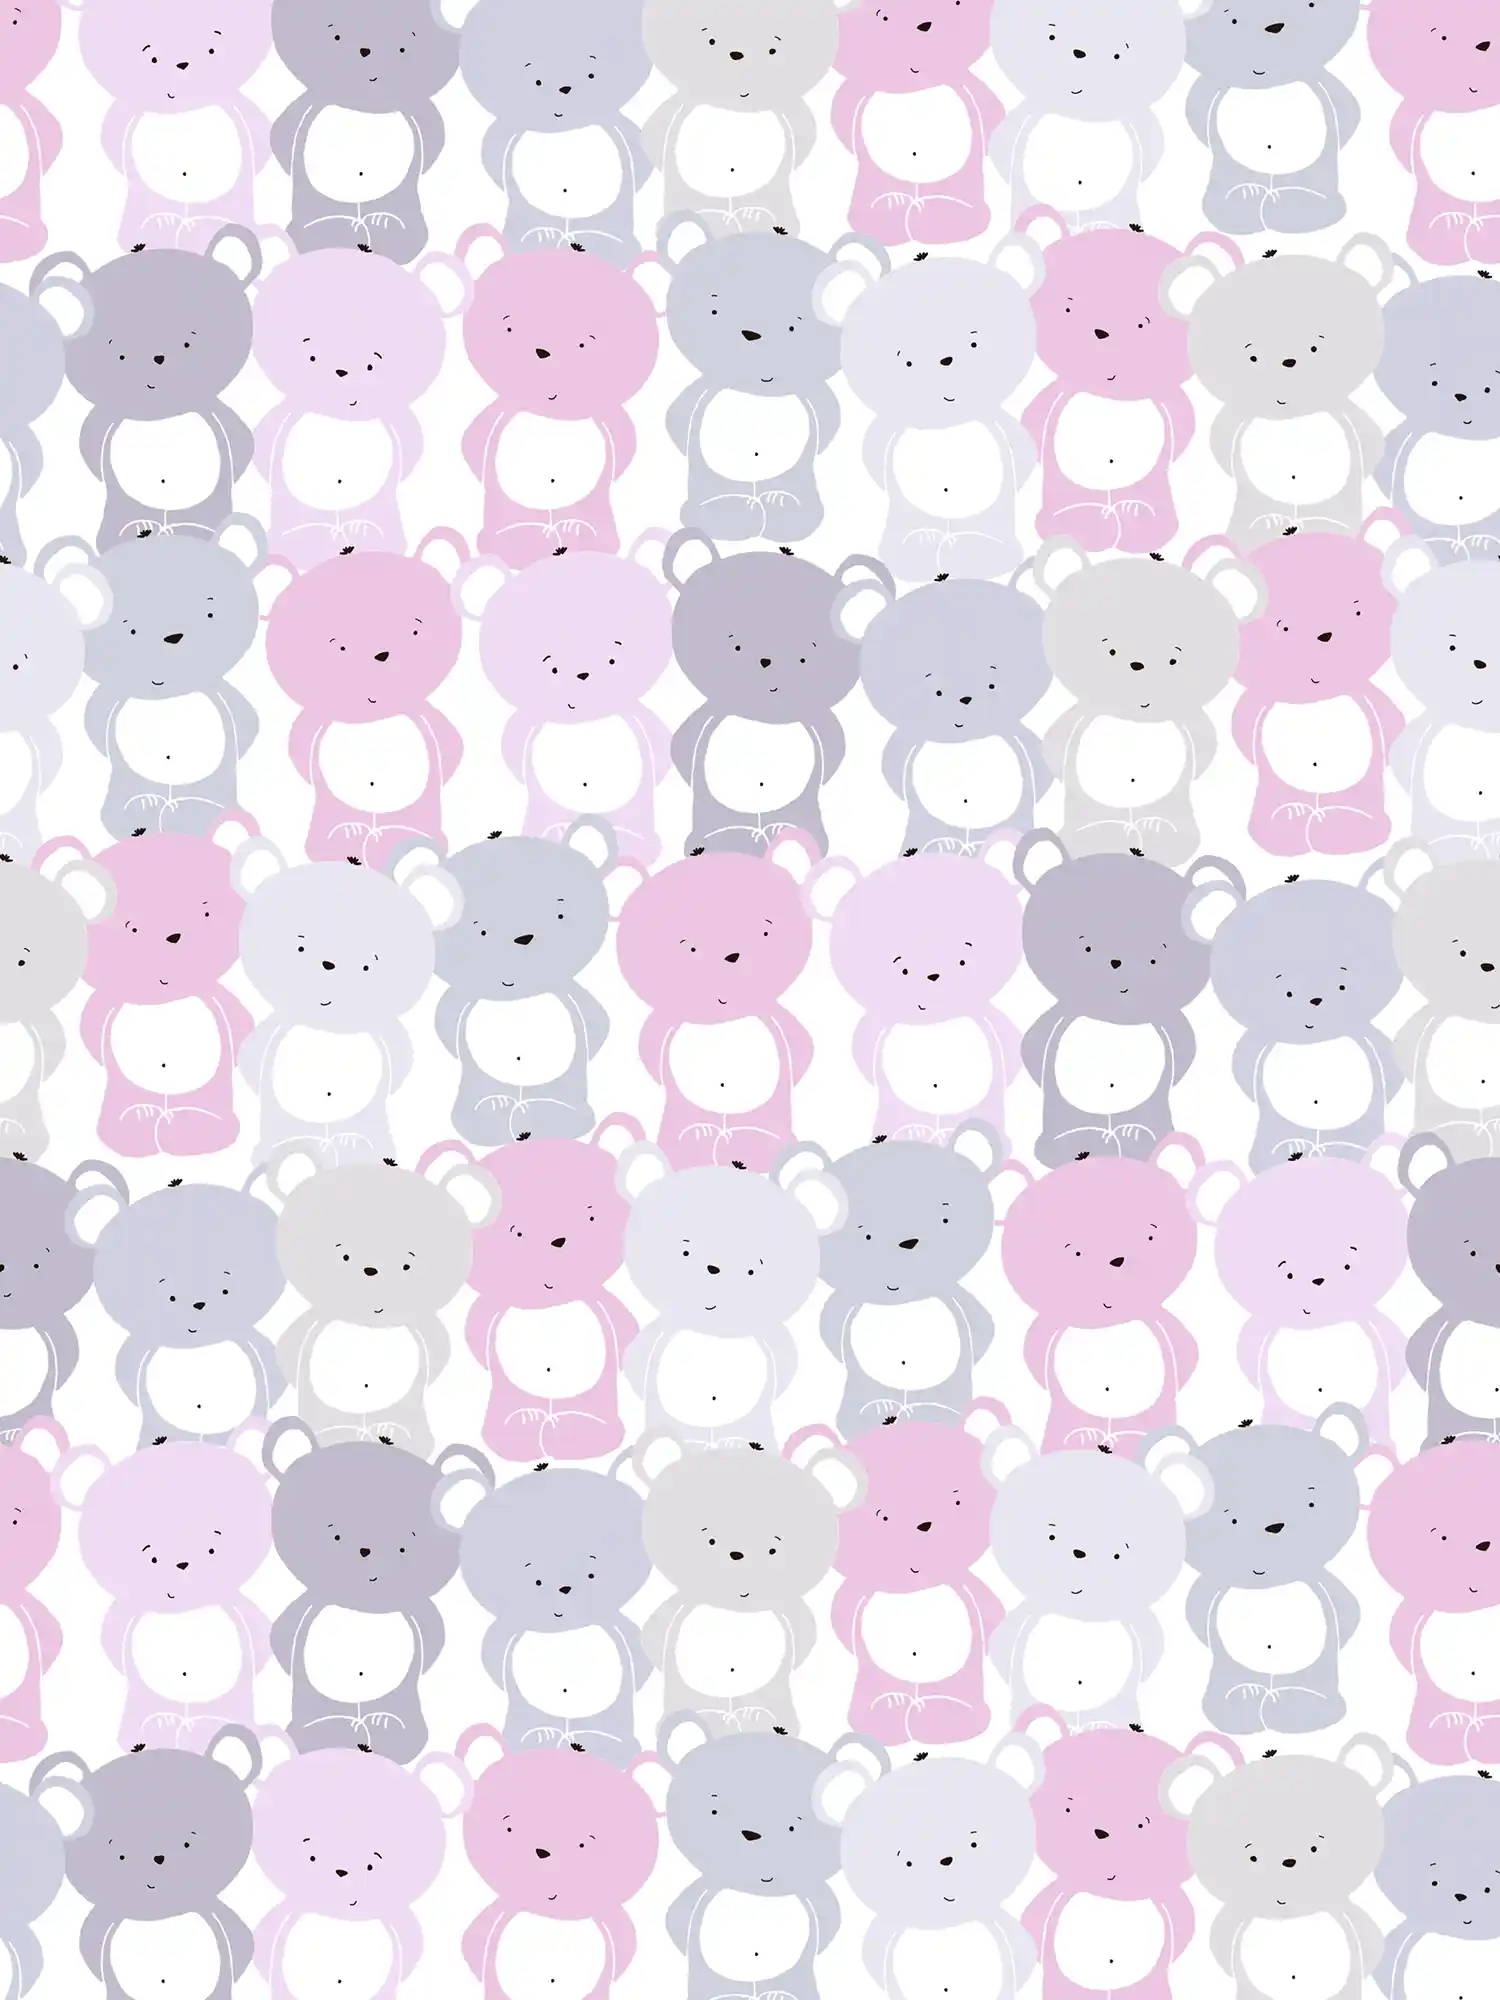 Tapete Kinderzimmer Mädchen Bären Muster – Rosa, Grau , Weiß
